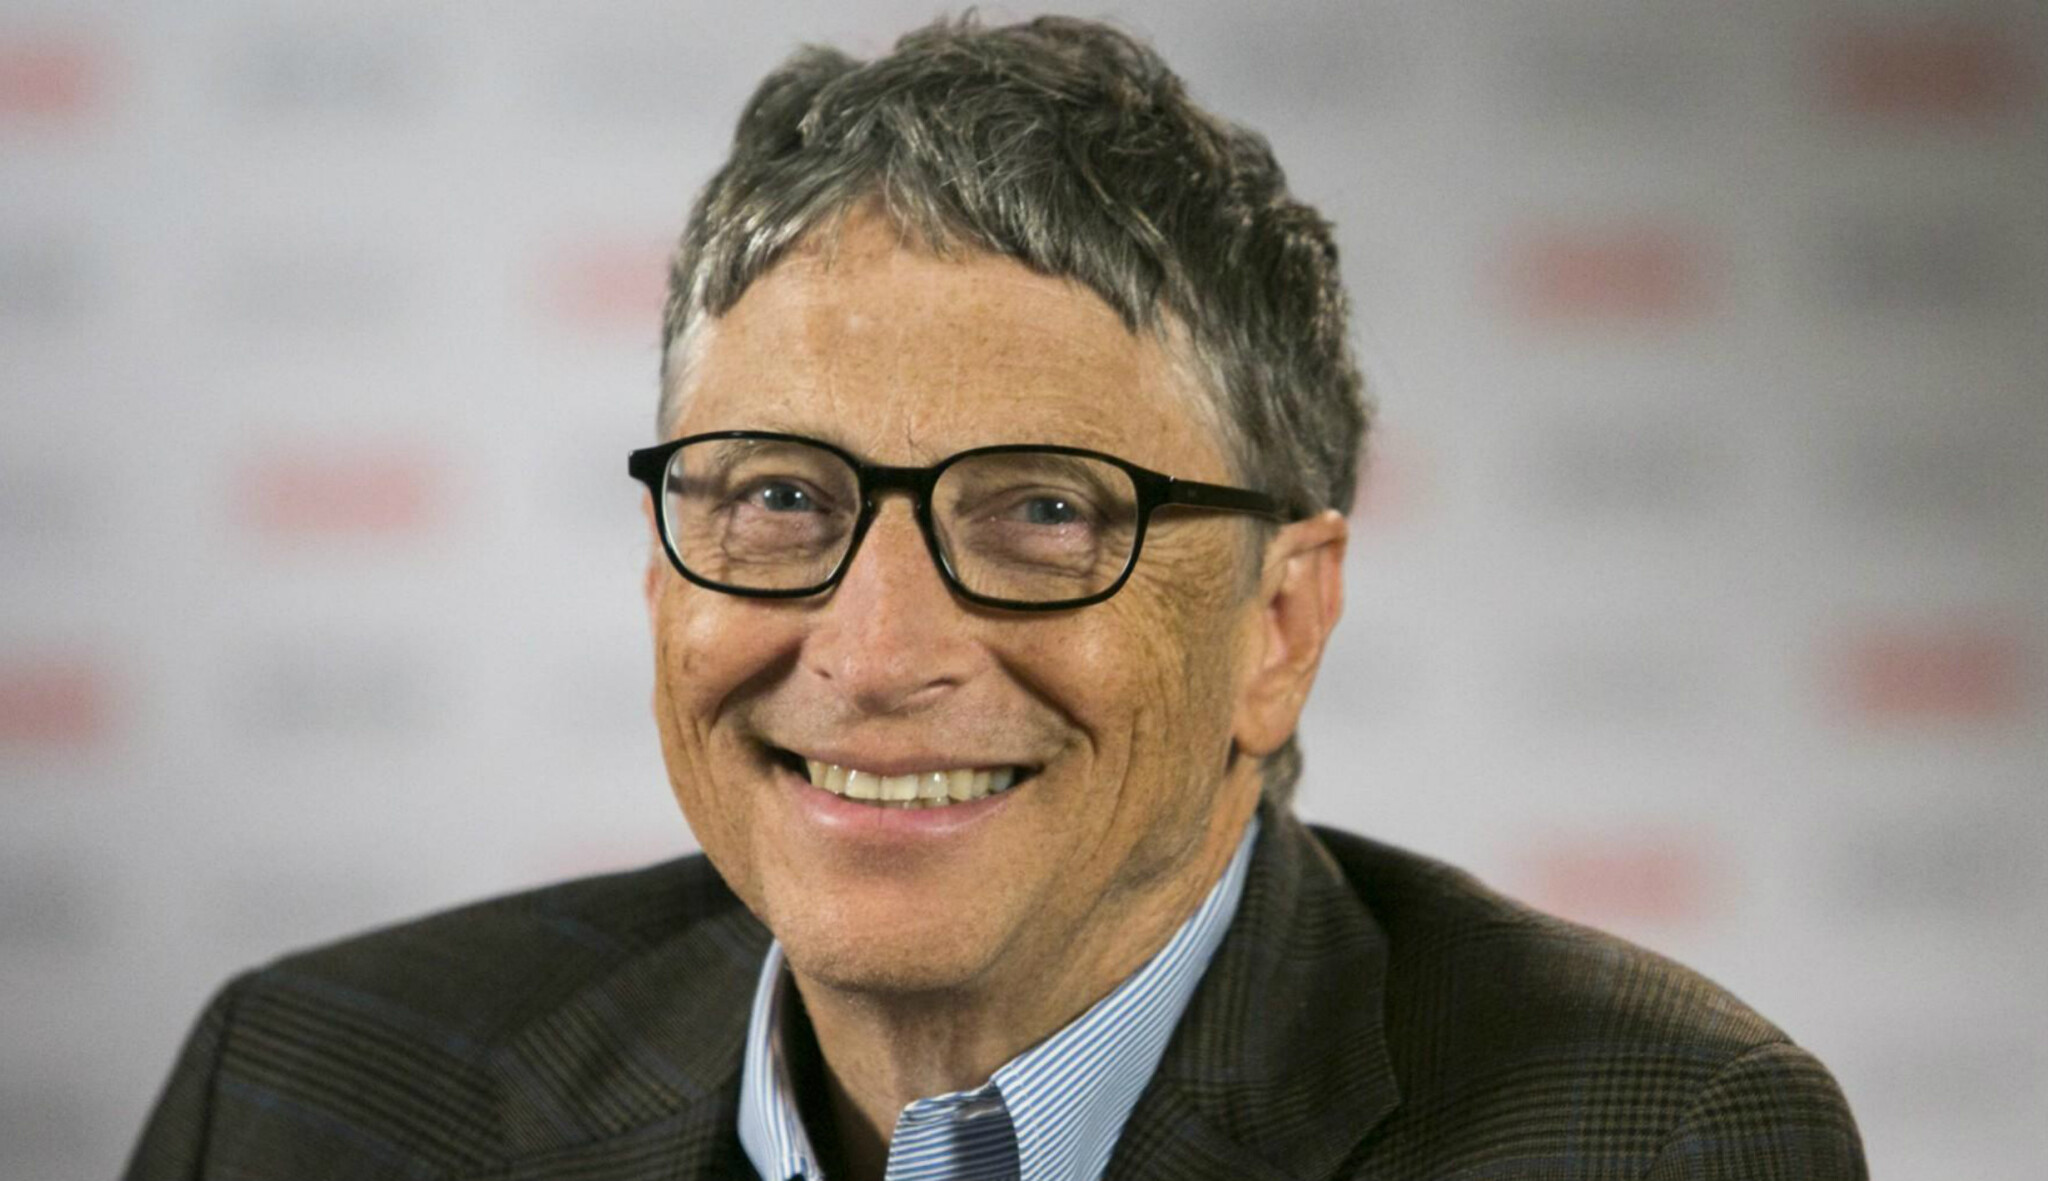 Deset průlomových technologií, které podle Billa Gatese letos změní svět